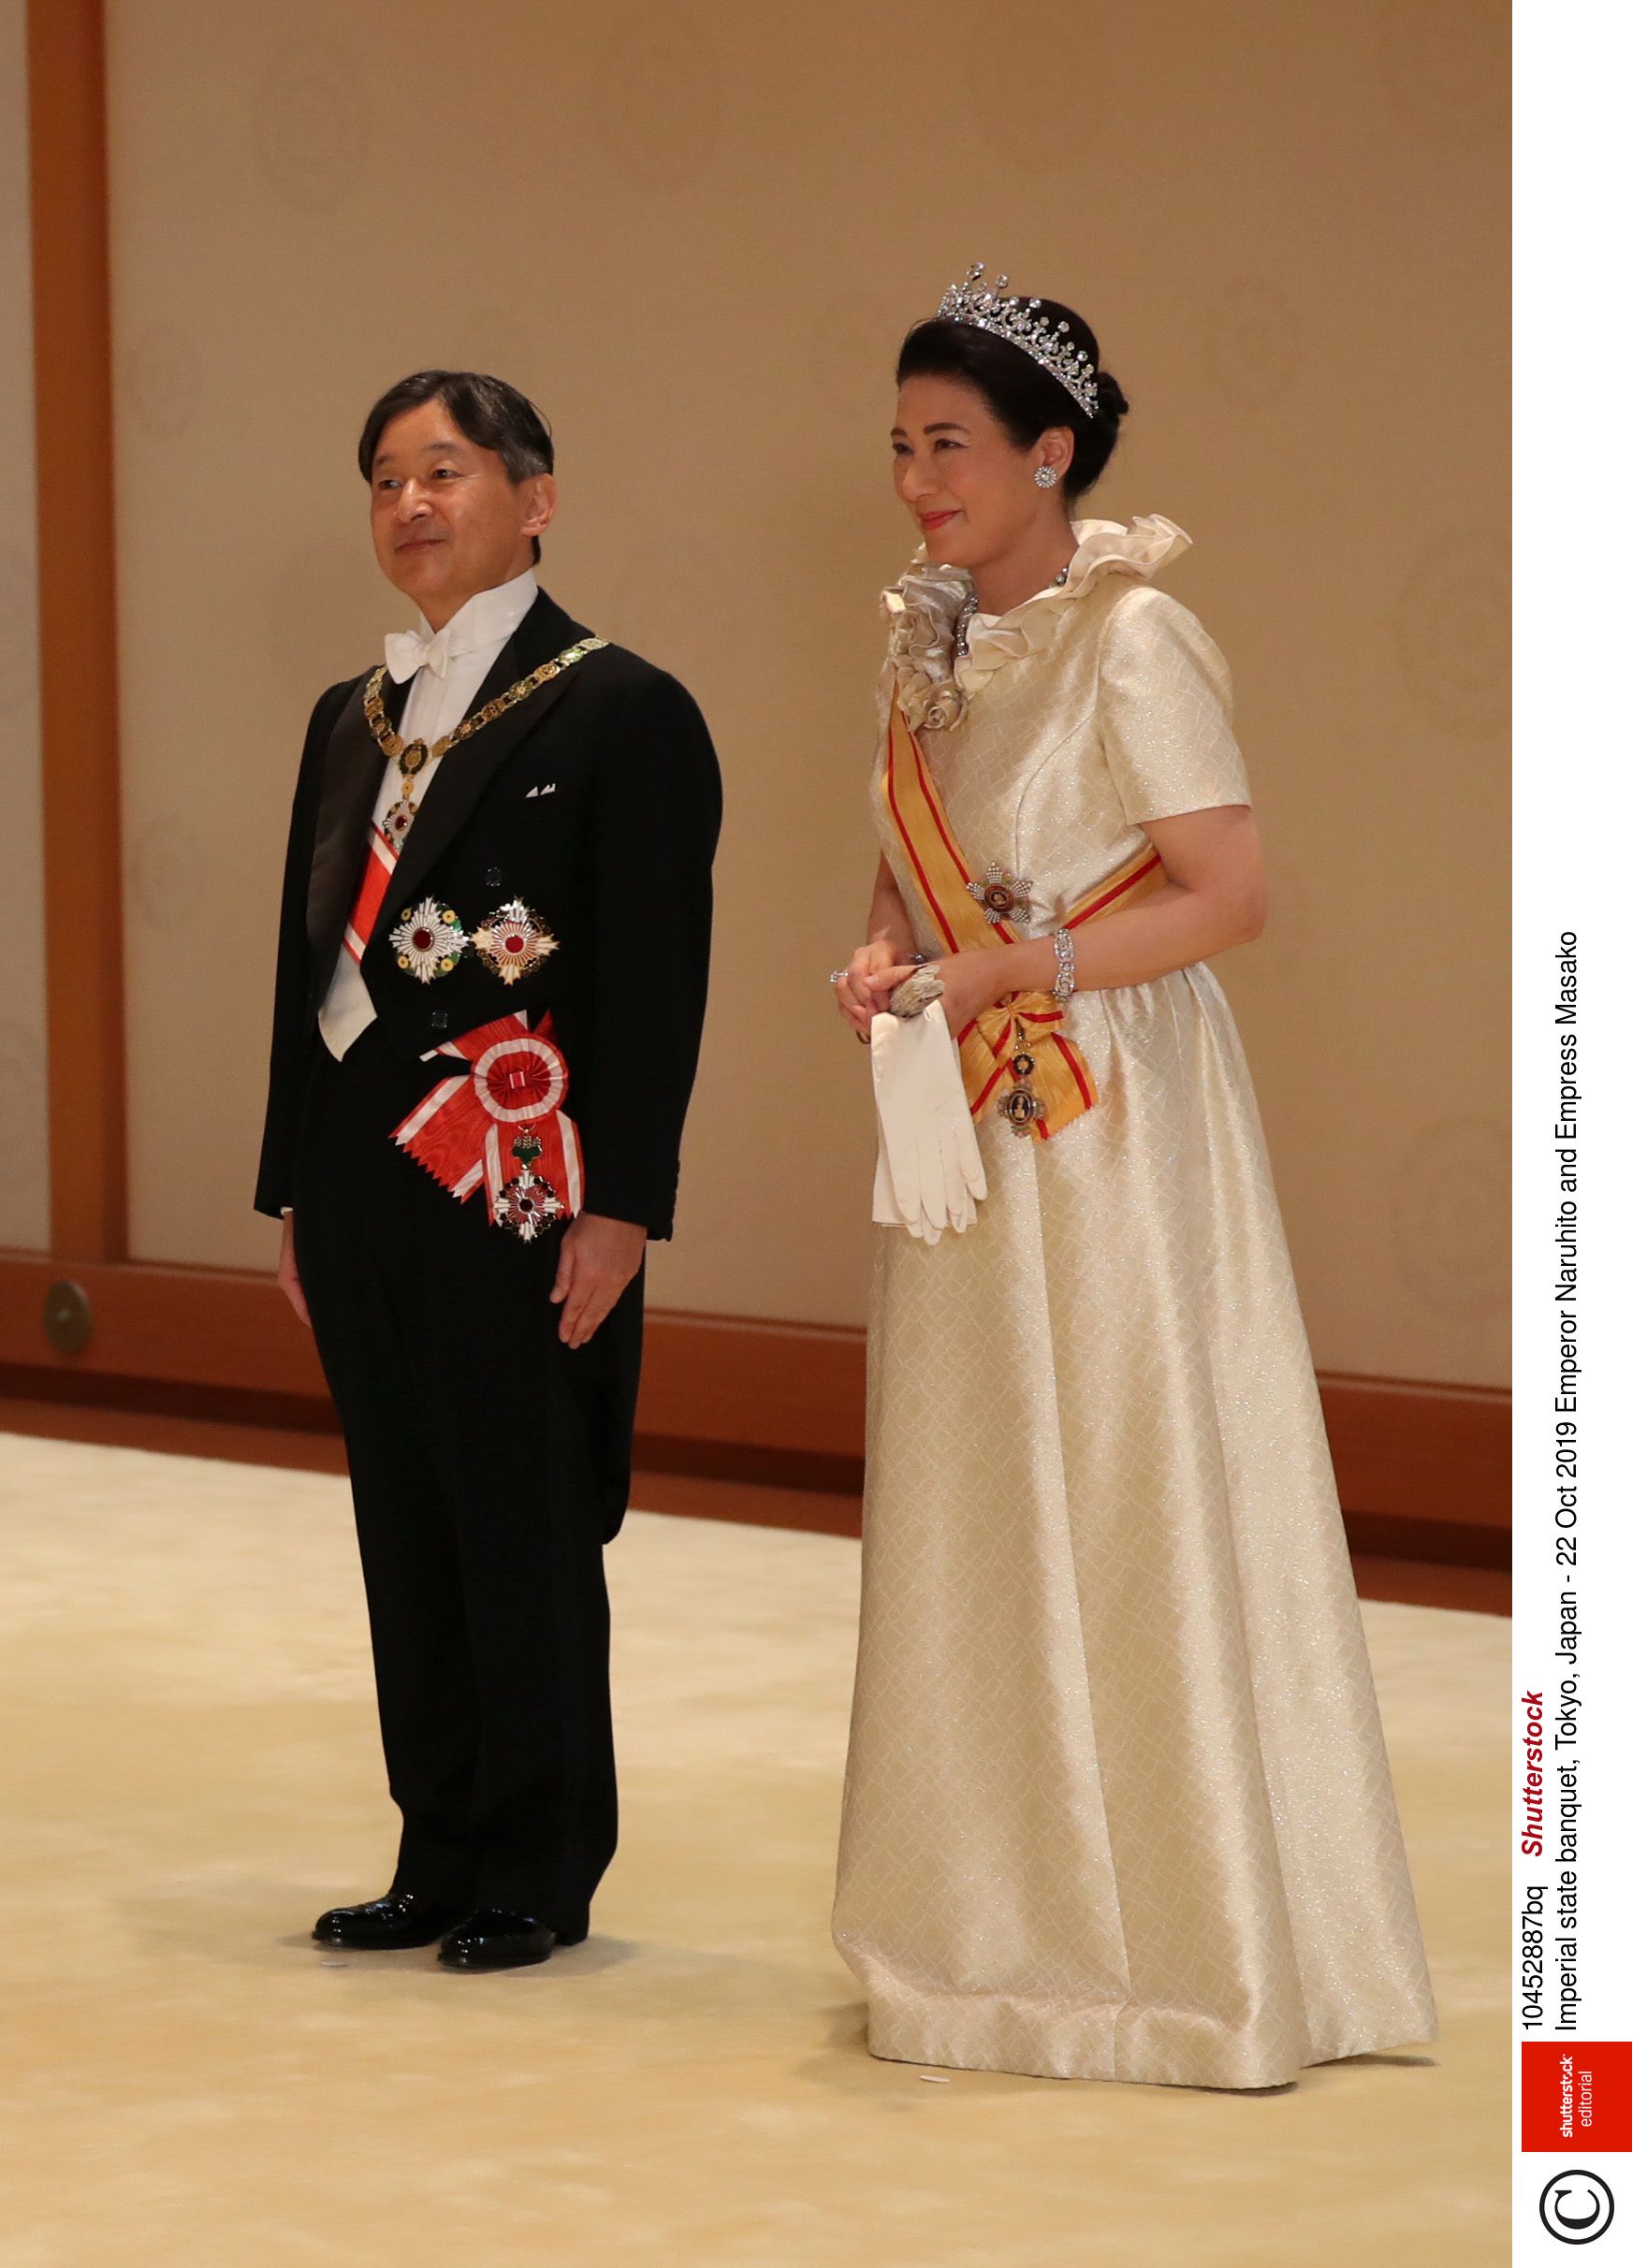 皇后雅子さまが魅せてきた、“白”の品格コーディネートアルバム